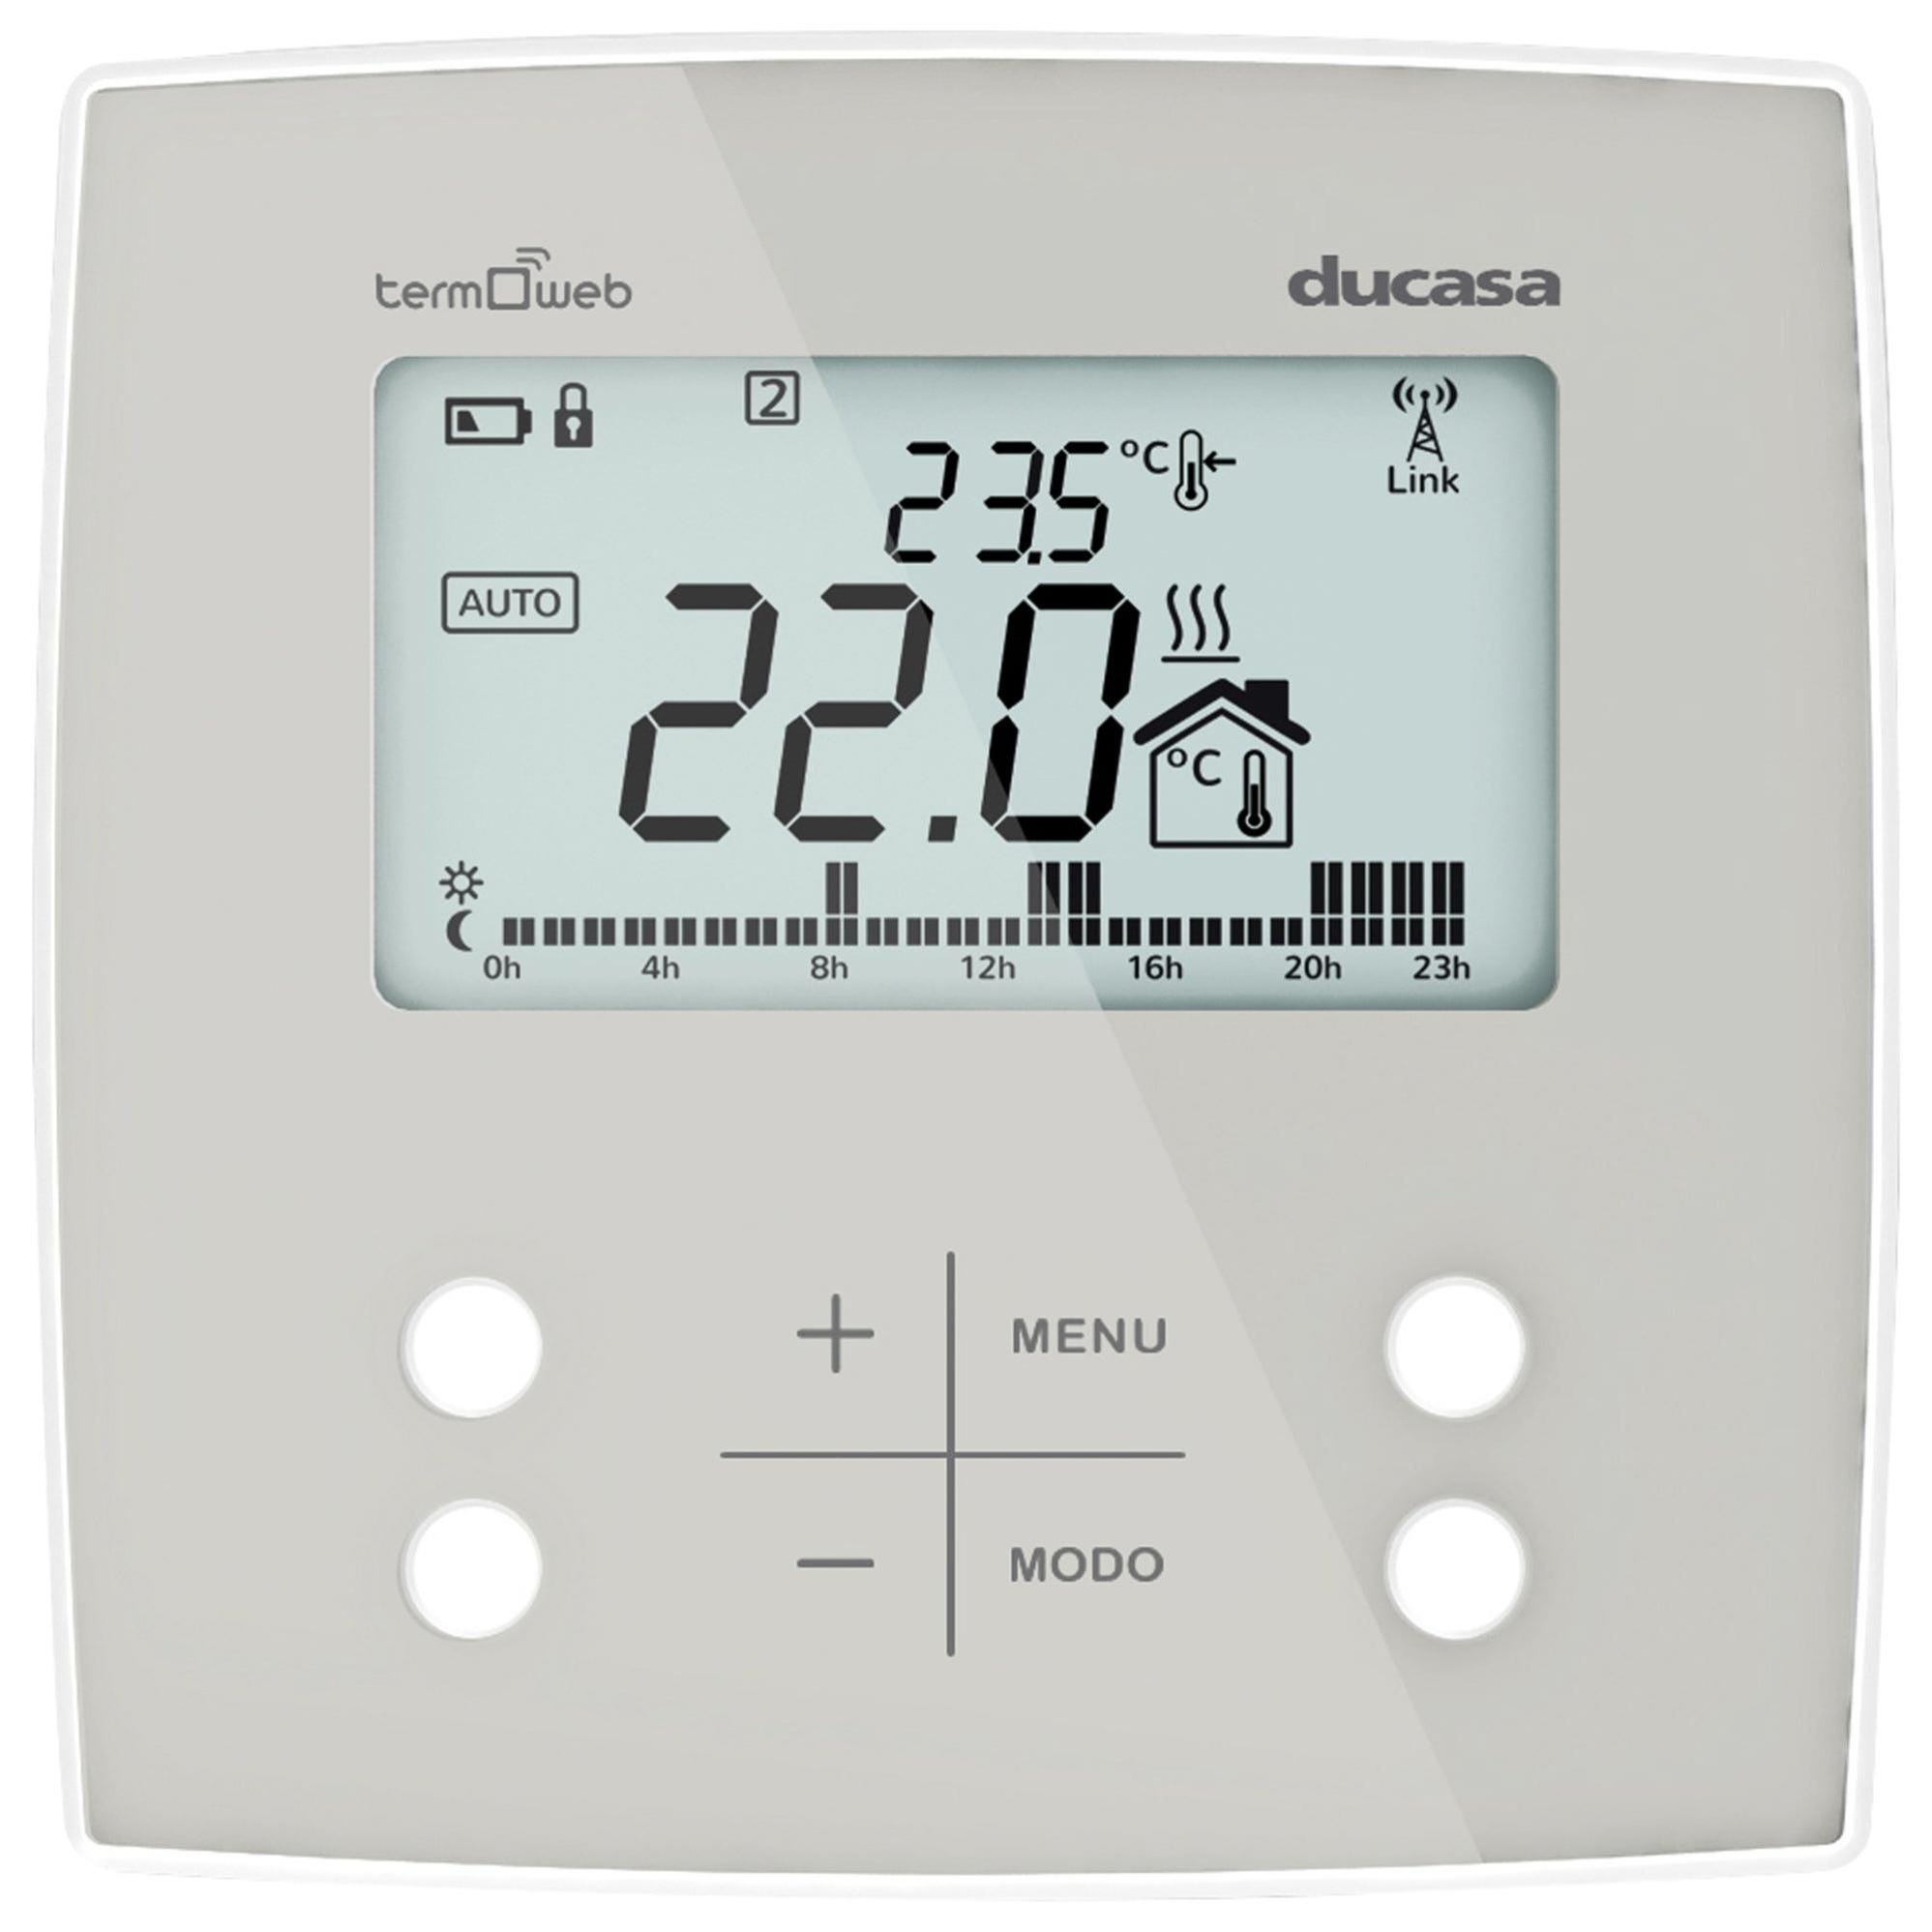 SPC Vesta Thermostat Termostato Inteligente WiFi para Caldera de Gas con  Control por App Blanco, Pc